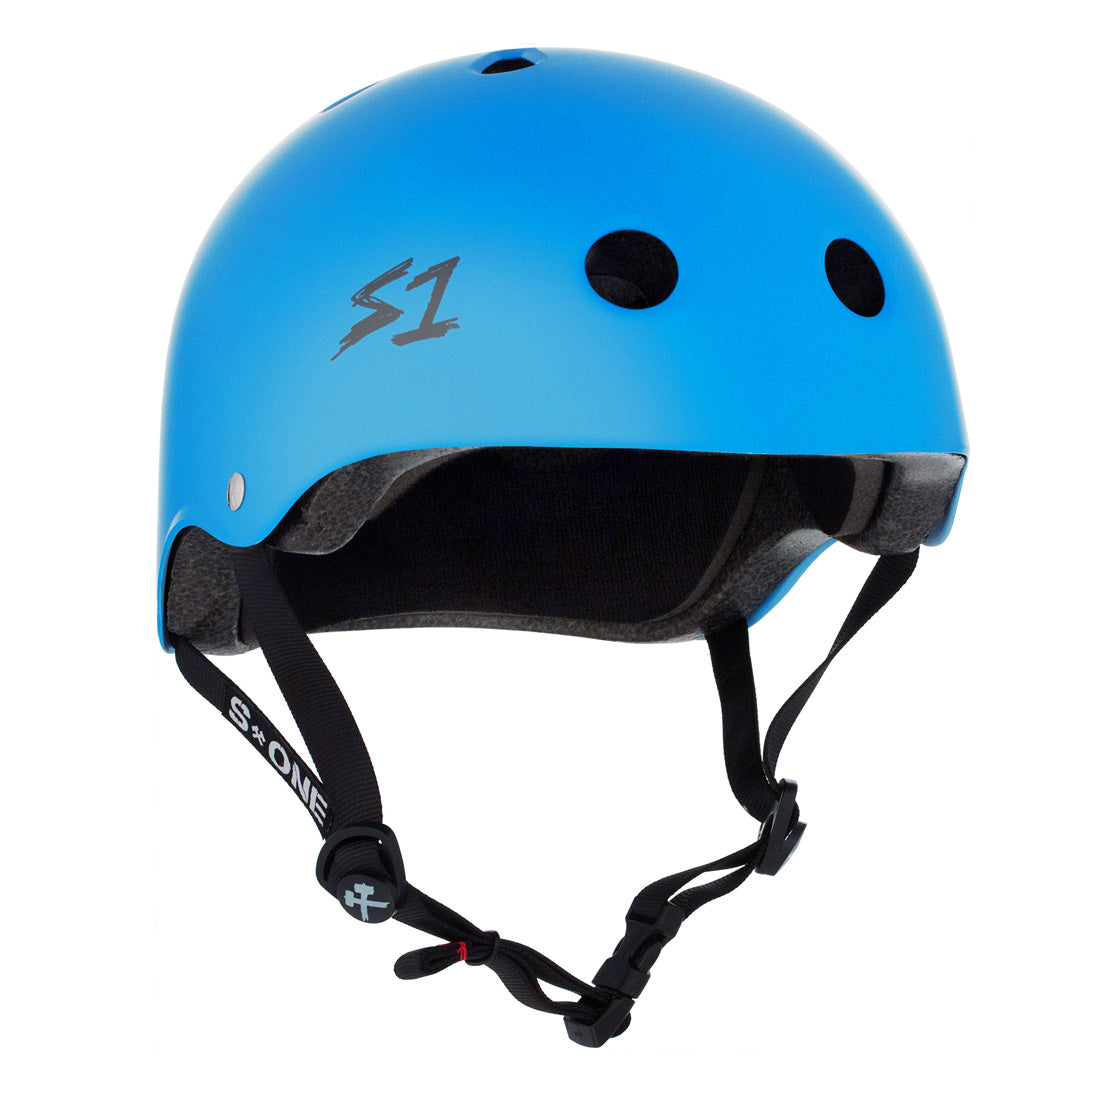 S-One Lifer Helmet - Cyan Matte Helmets